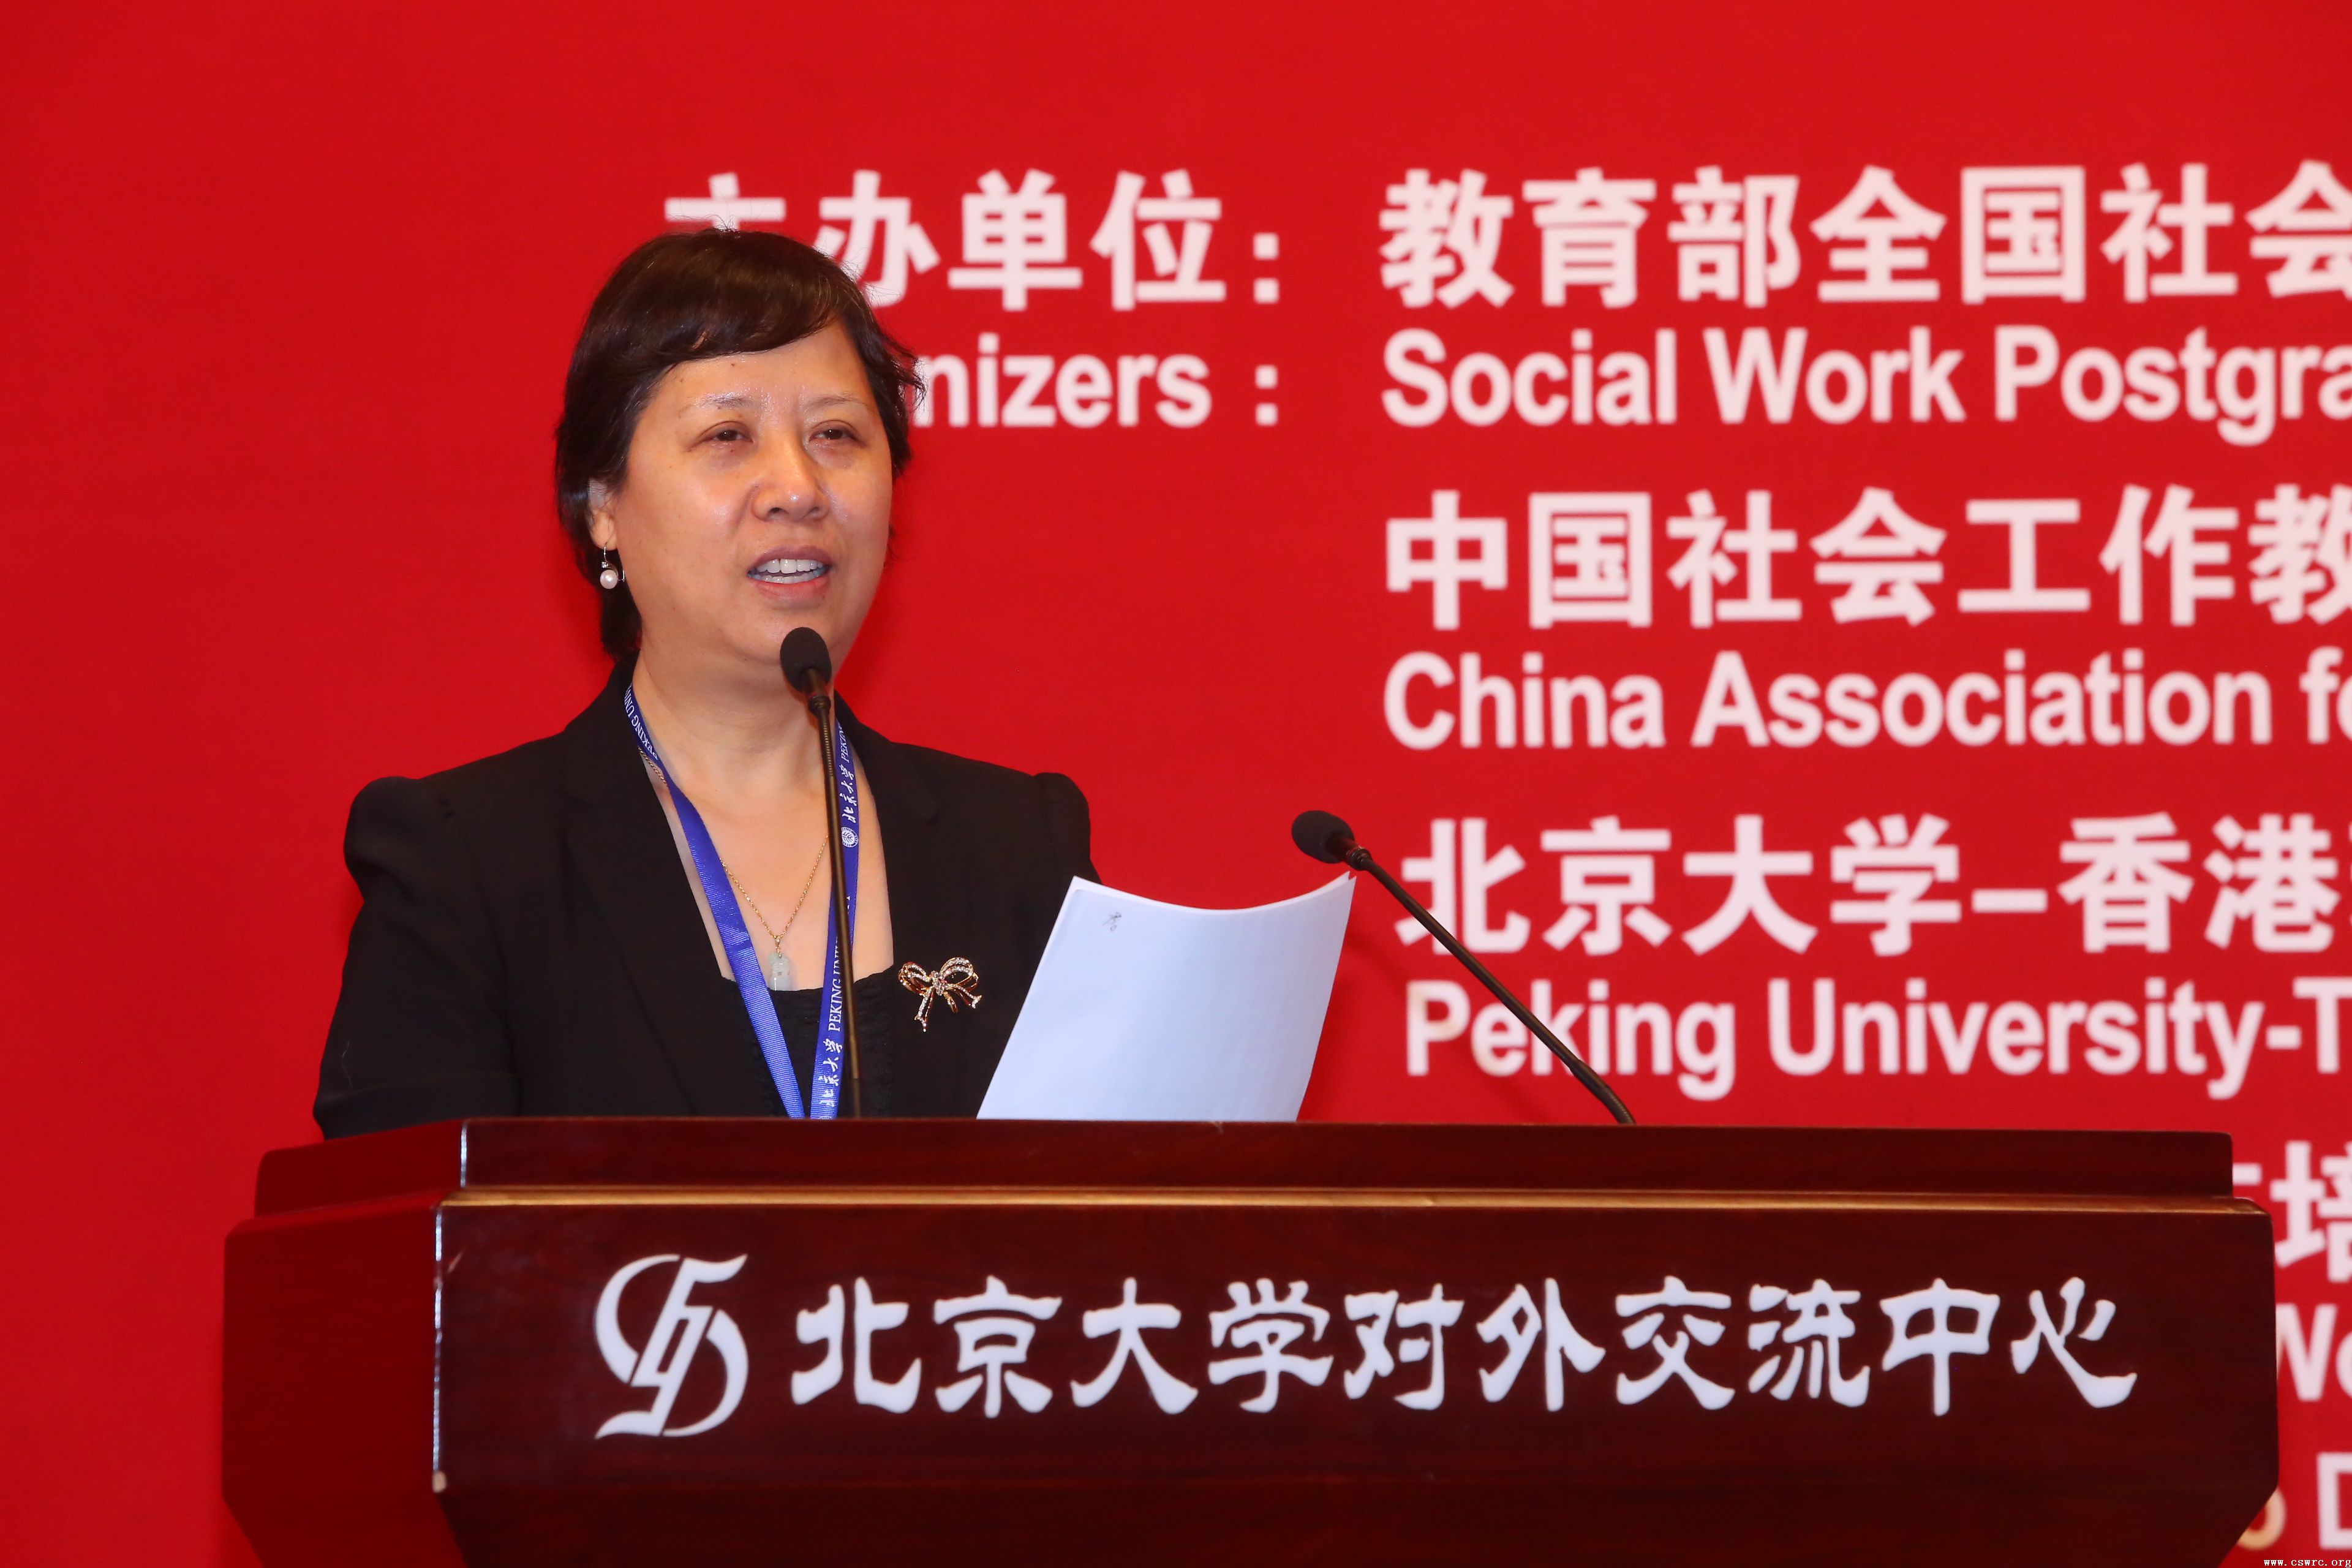 第四届林护杰出社会工作奖颁奖典礼在北京大学举办